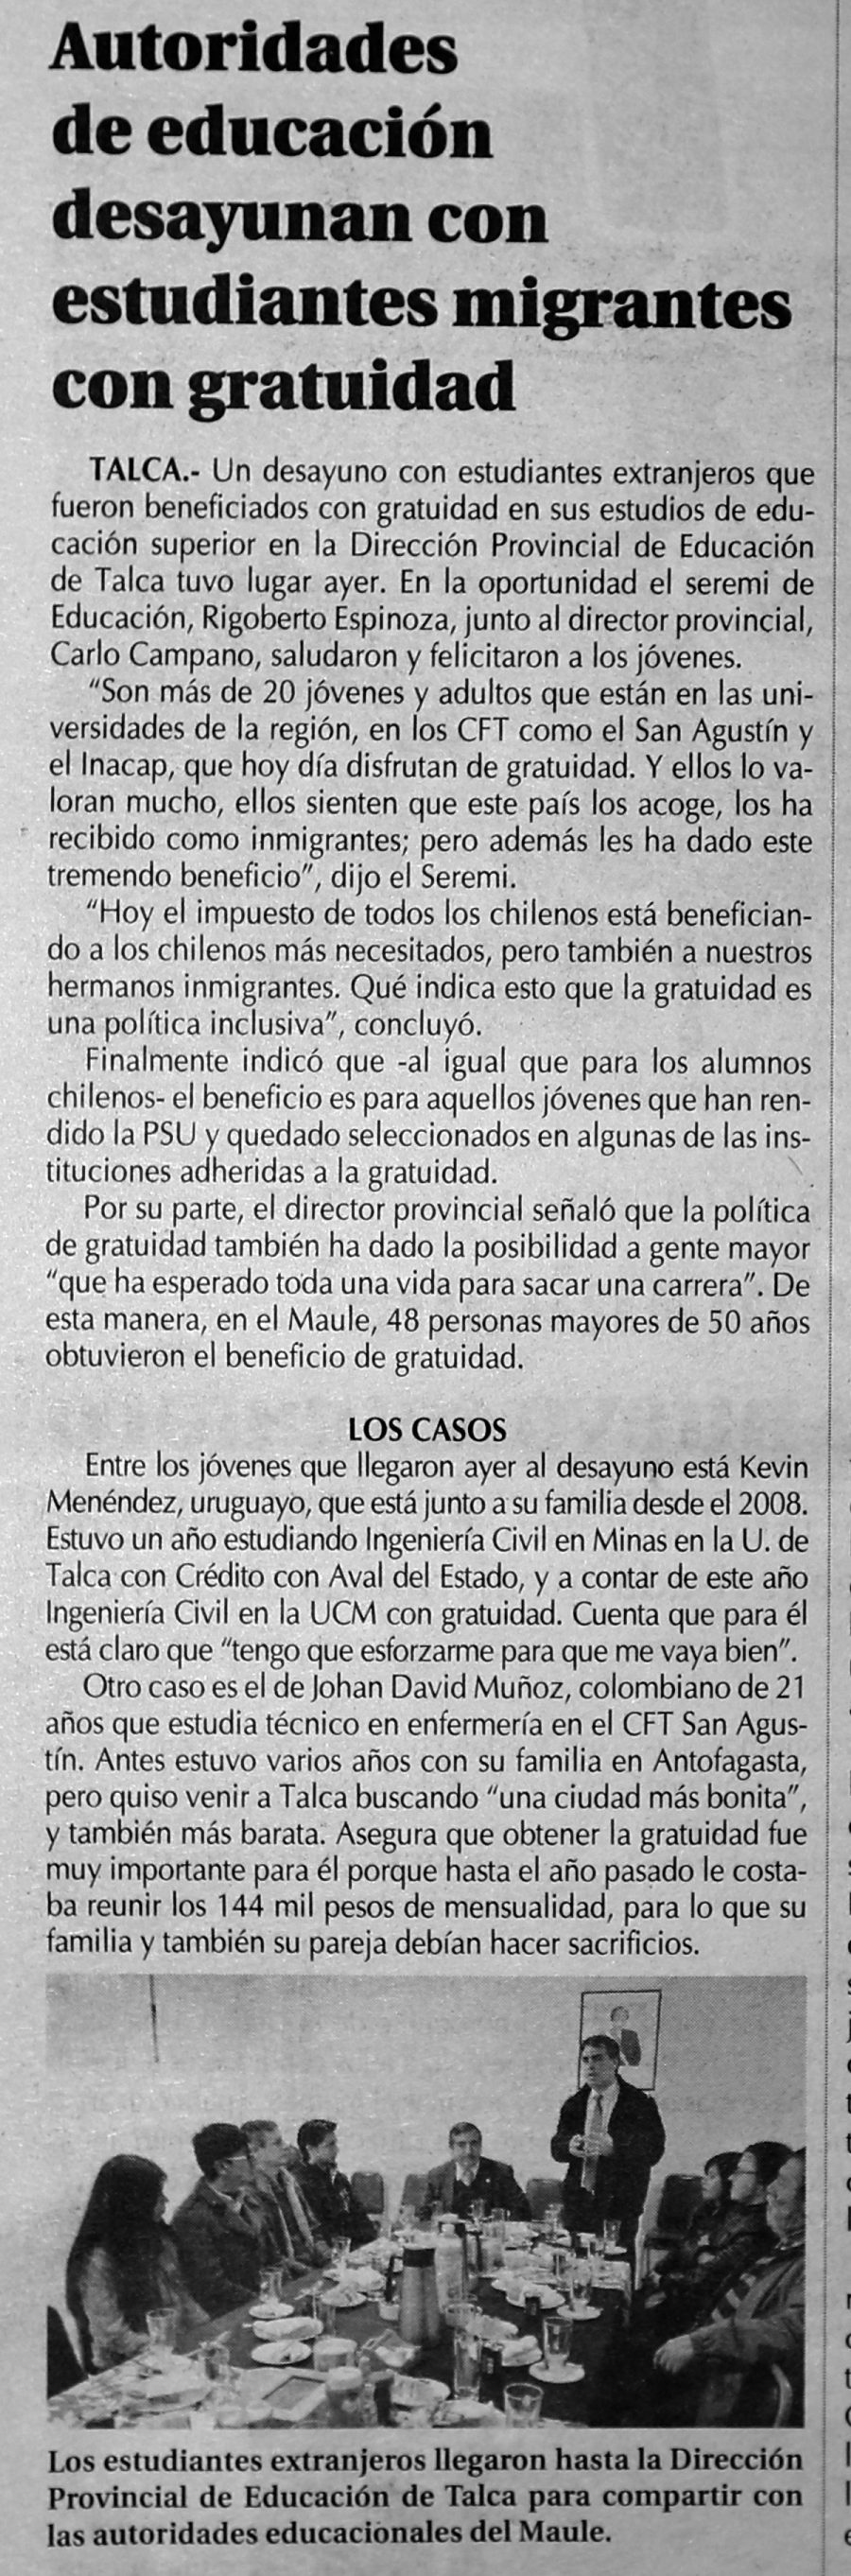 19 de junio en Diario El Centro: “Autoridades de educación desayunan con estudiantes migrantes con gratuidad”